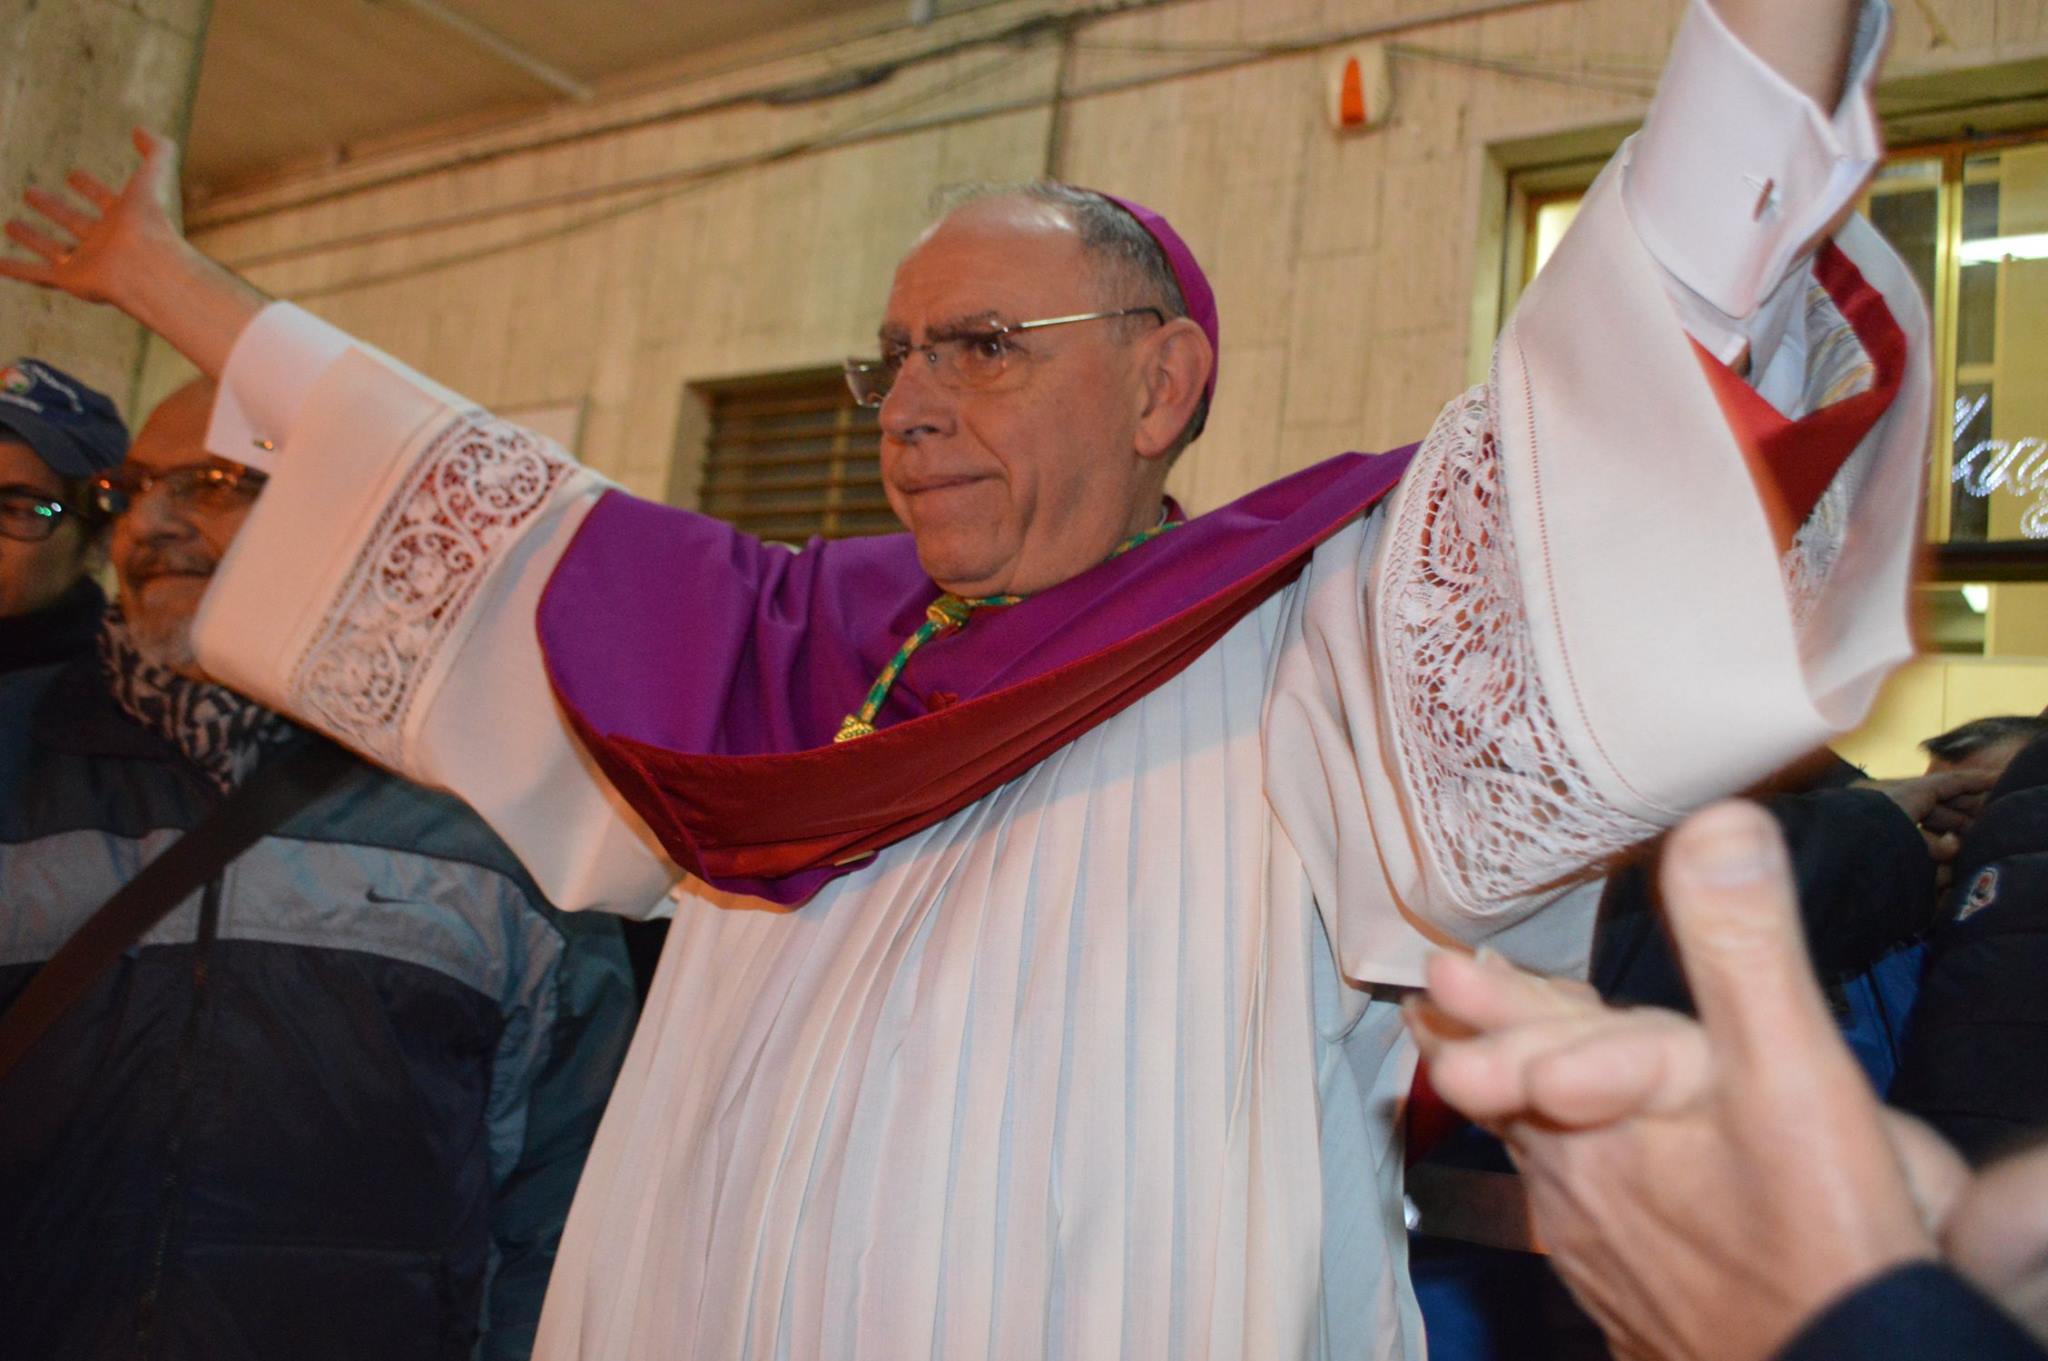 Il vescovo duro con i sacerdoti no-vax: "Stop alle attività pastorali e divieto di dare la comunione"